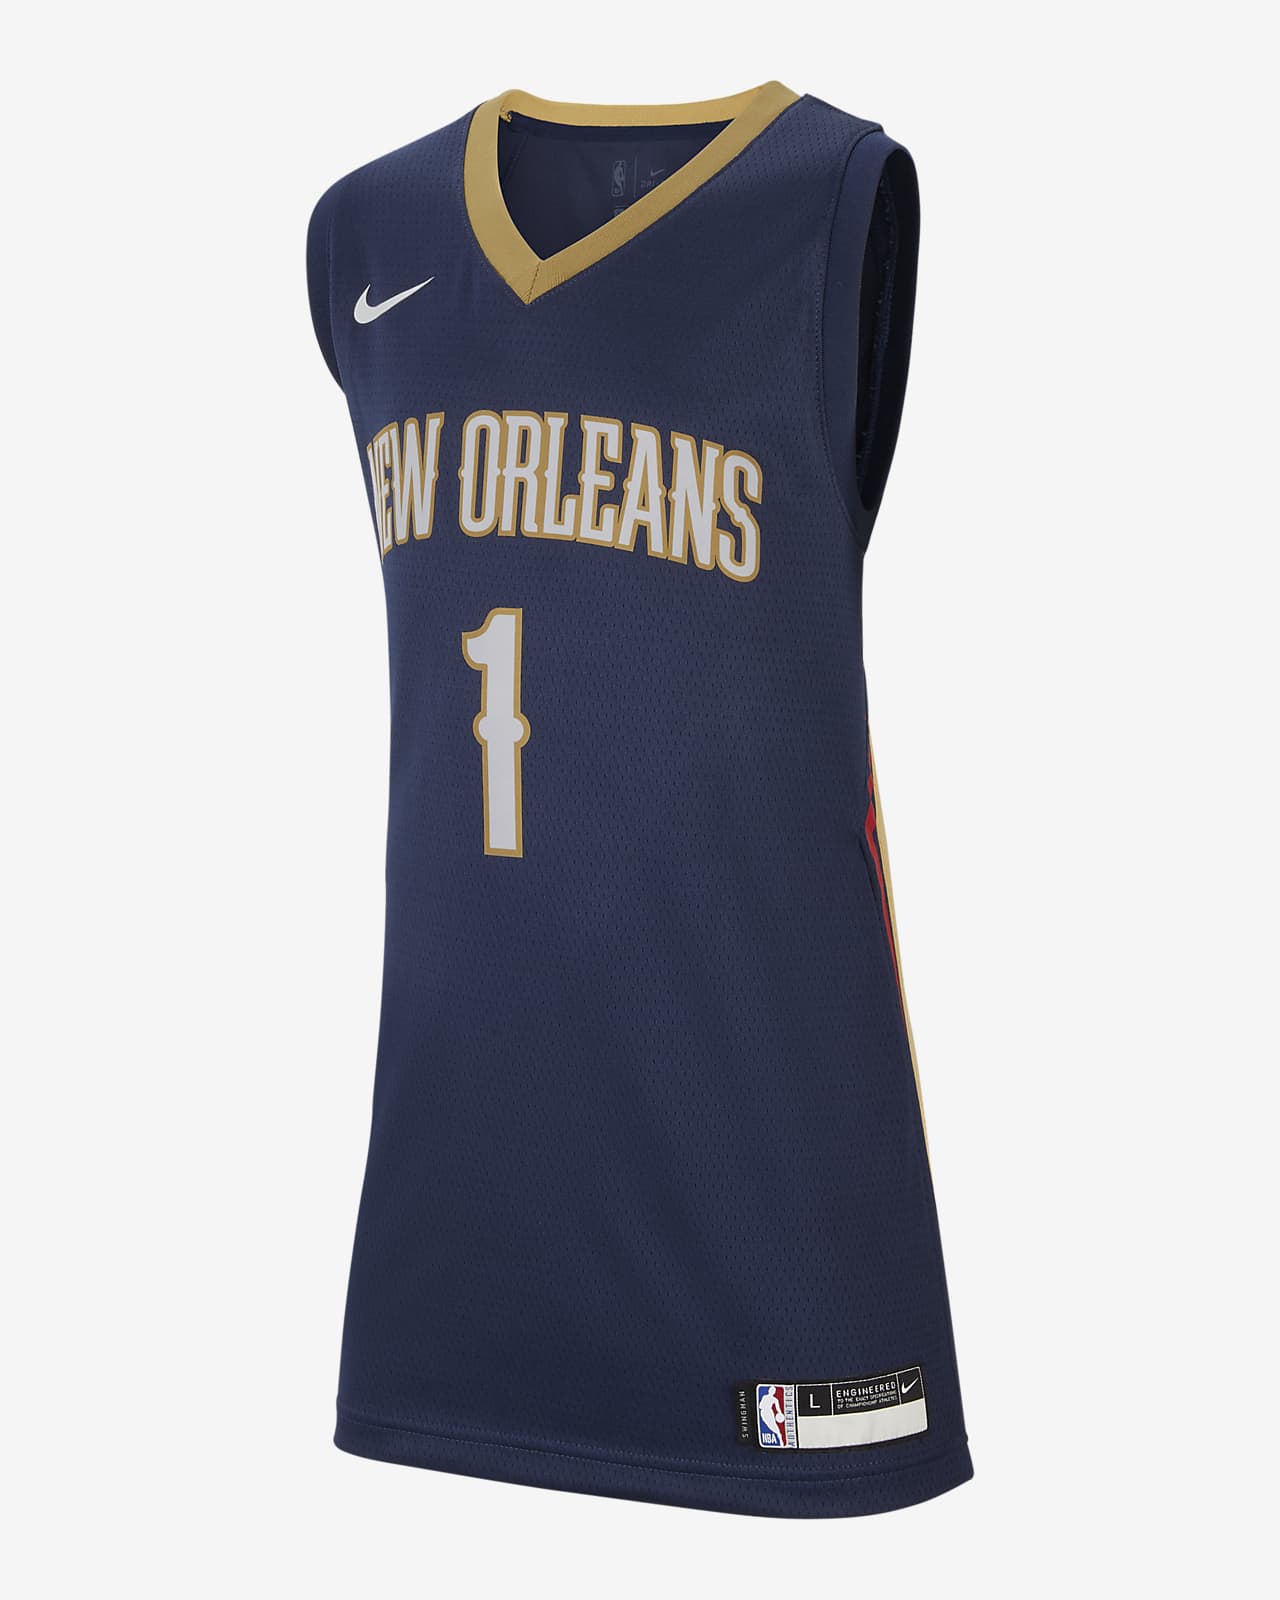 Pelicans Icon Edition Older Kids' Nike NBA Swingman Jersey